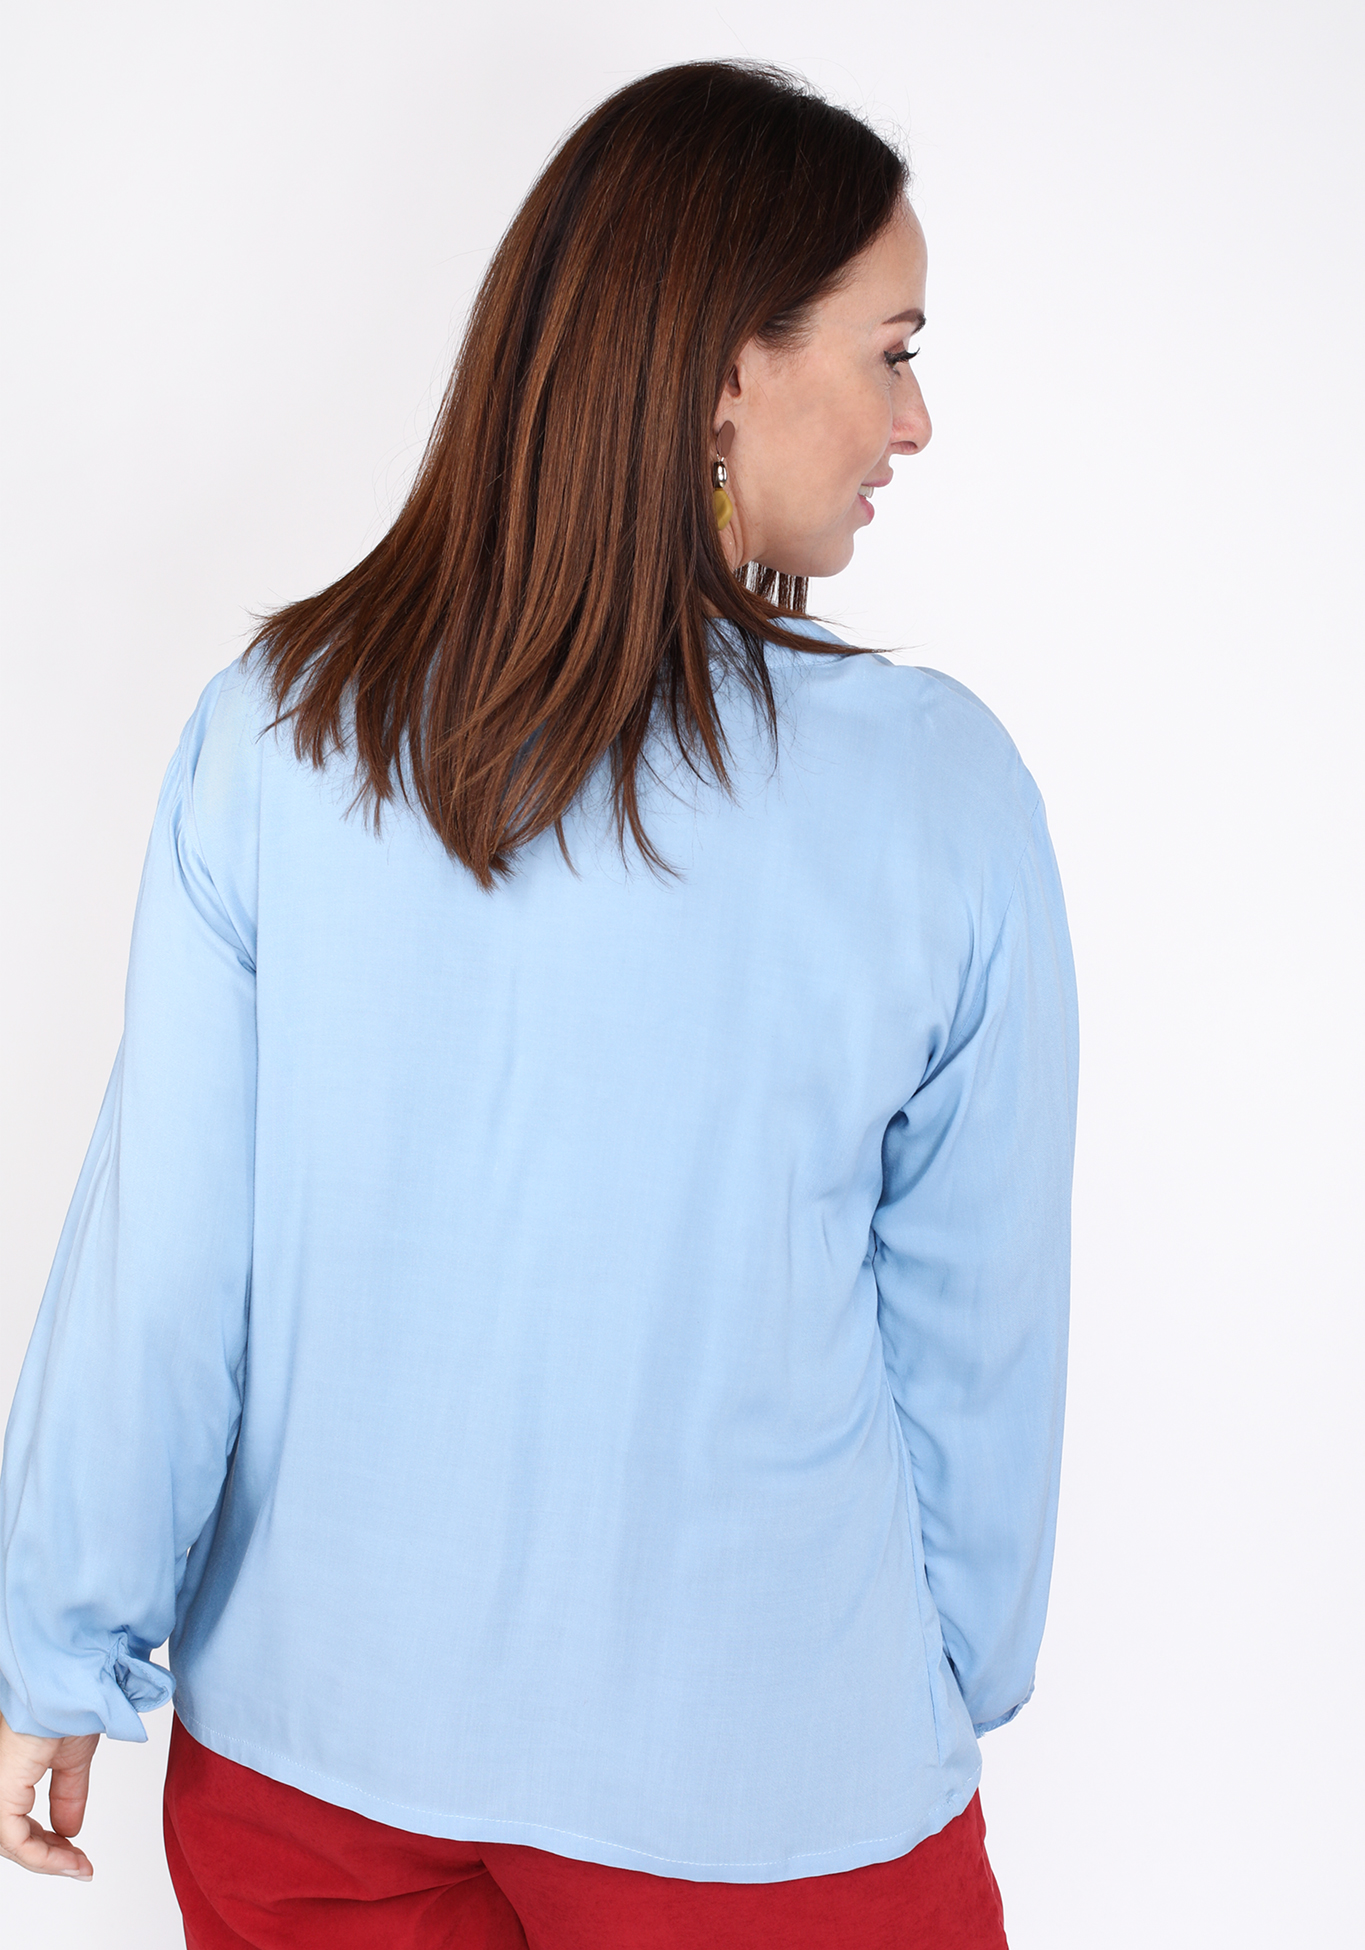 Блузка с V-образным вырезом, свободного кроя Simple Story, размер 48, цвет белый - фото 10